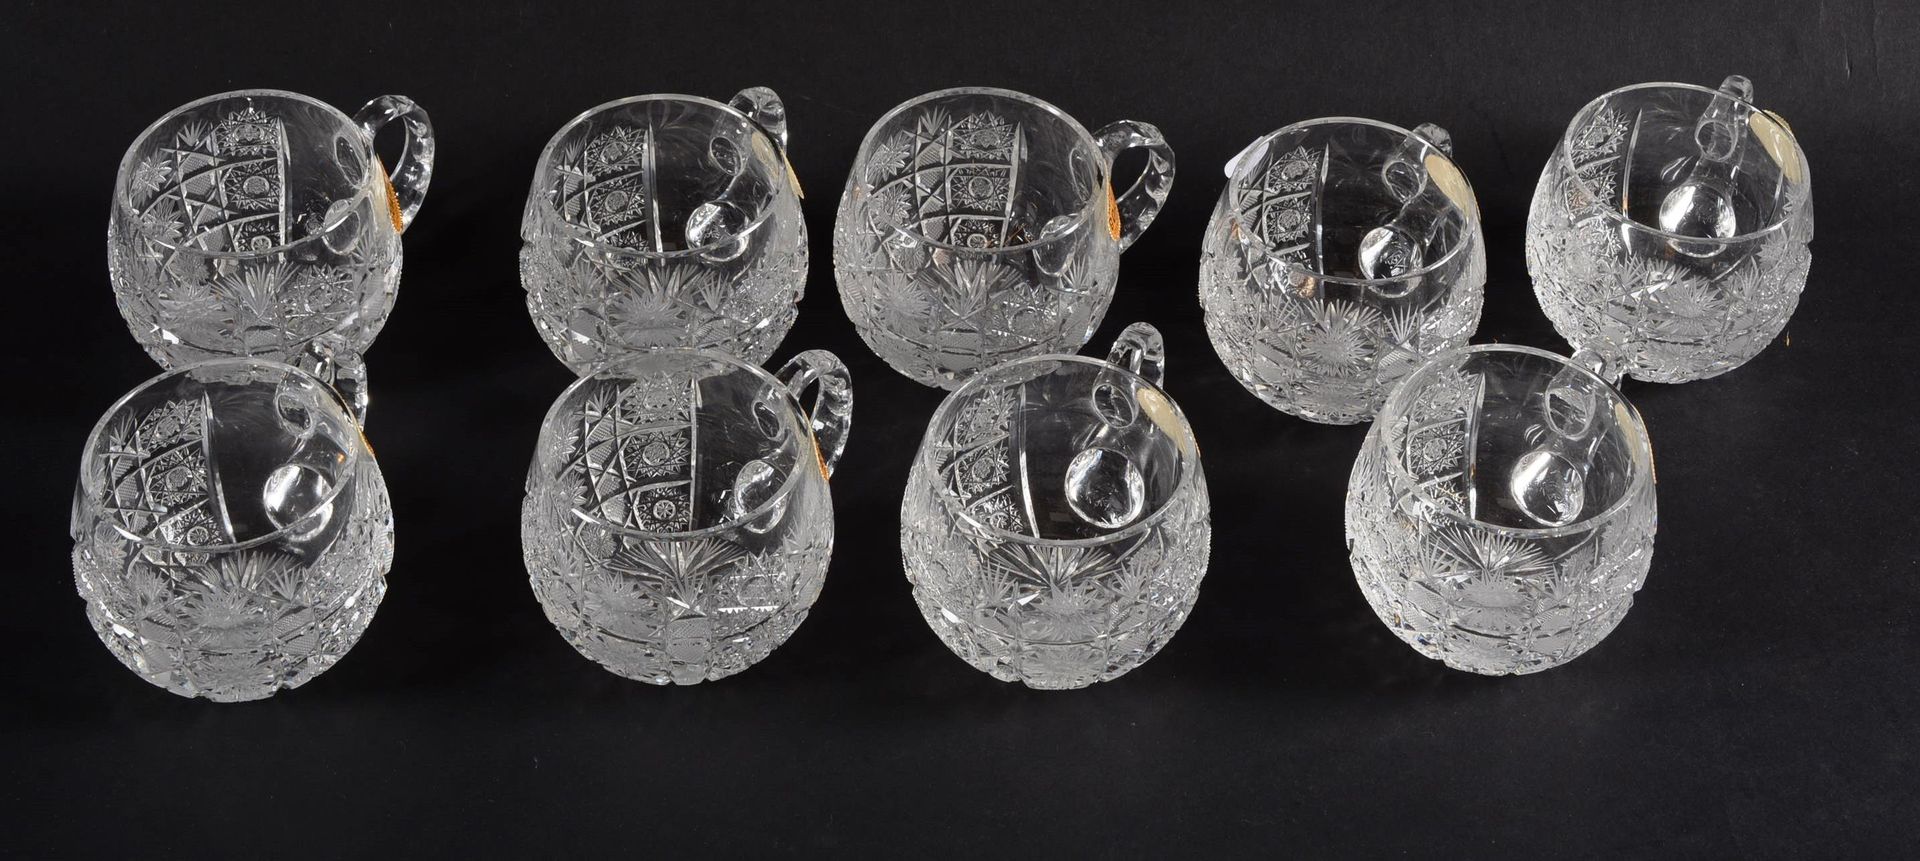 Neuk tasses cristal de Bohème Nine (9) Bohemian engraved crystal cups H: 6,50 cm